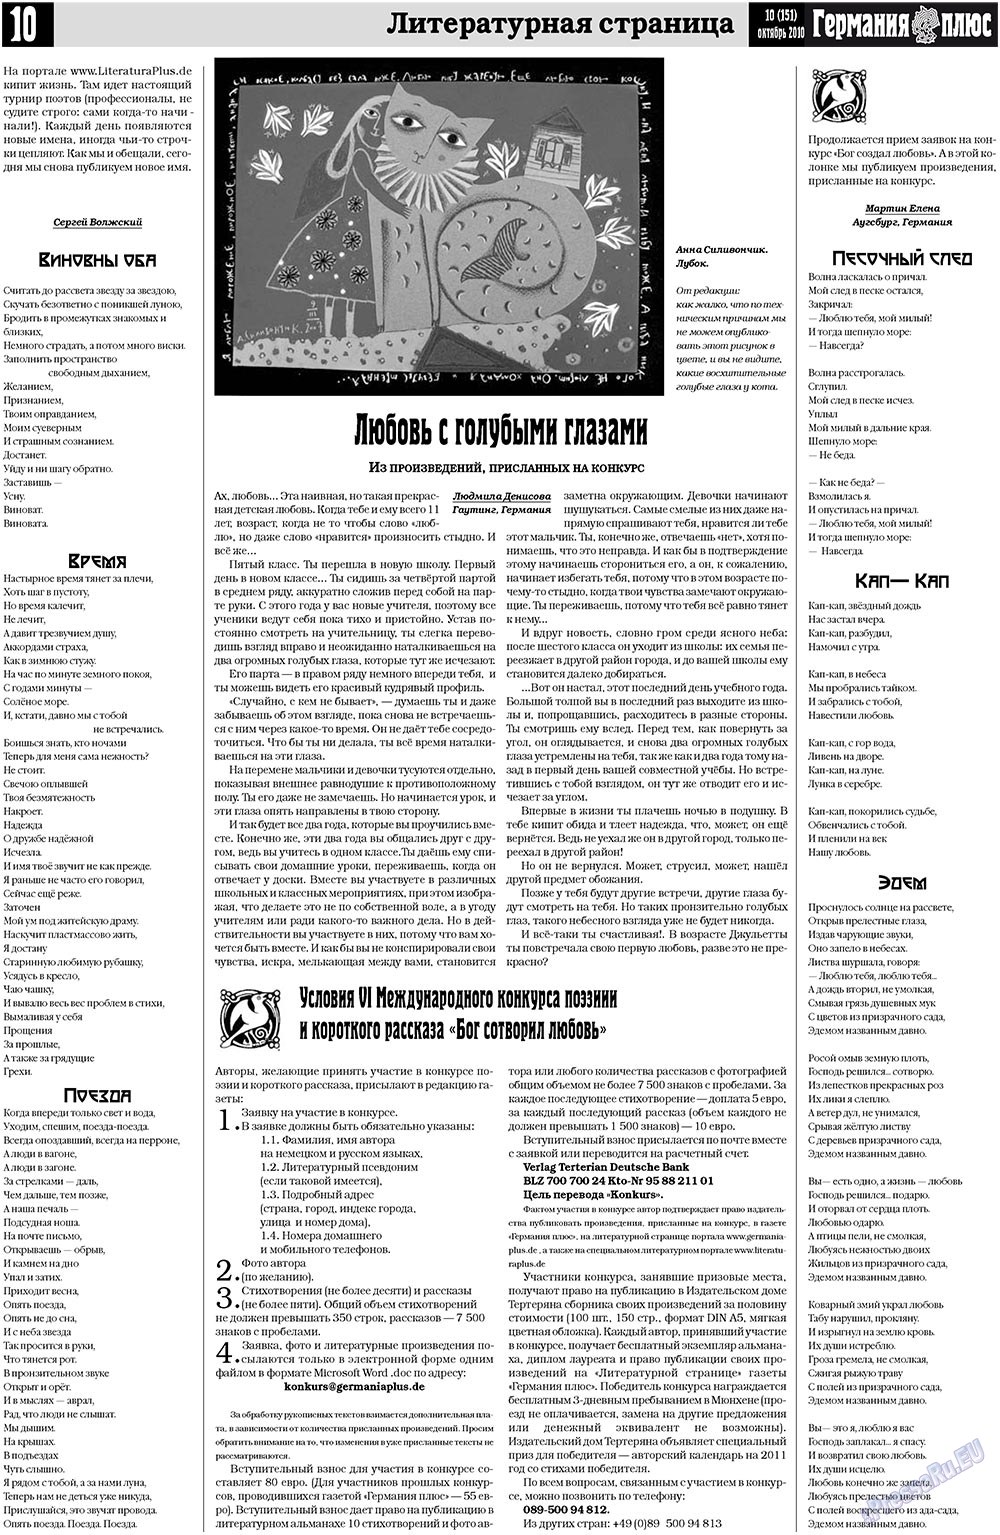 Германия плюс (газета). 2010 год, номер 10, стр. 10